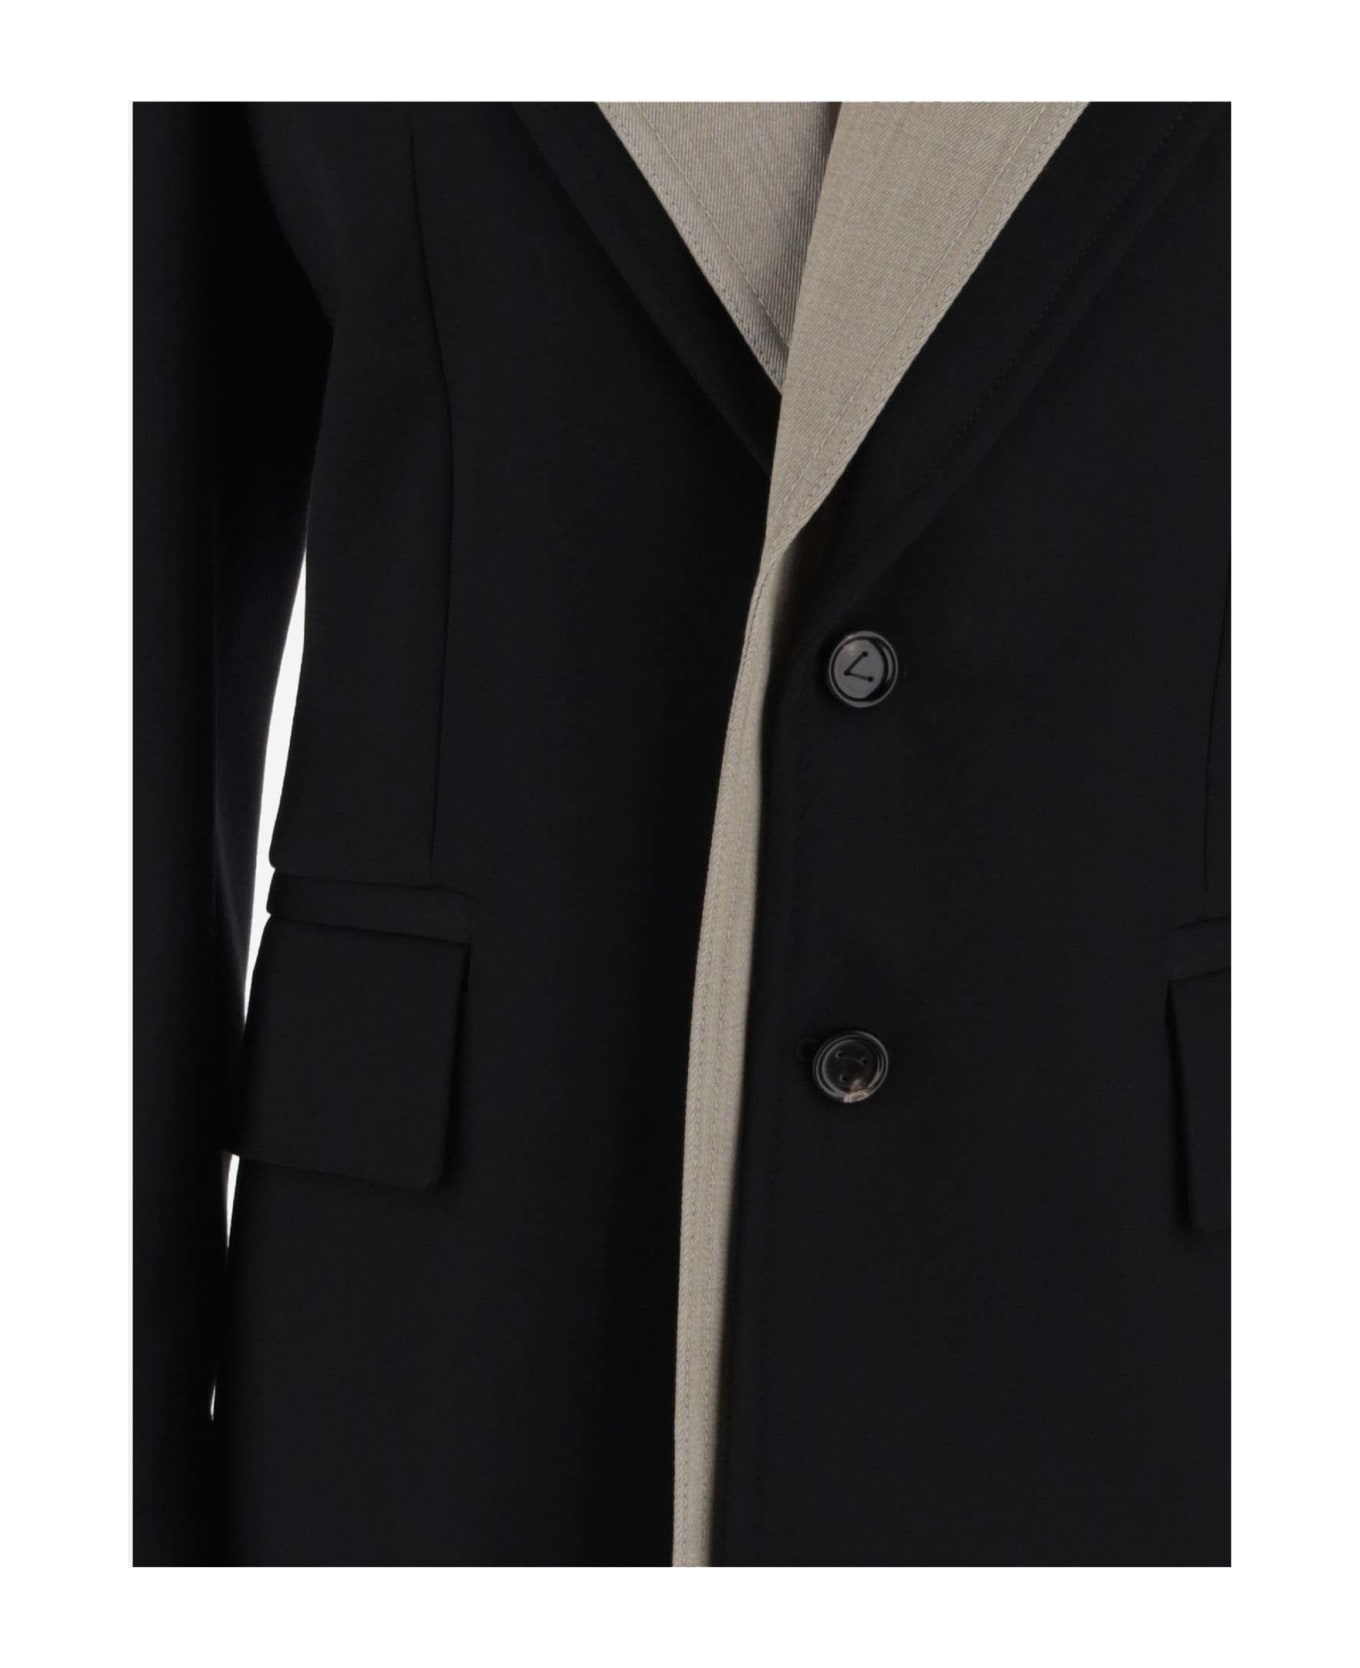 Bottega Veneta Curved Sleeved Jacket - Black